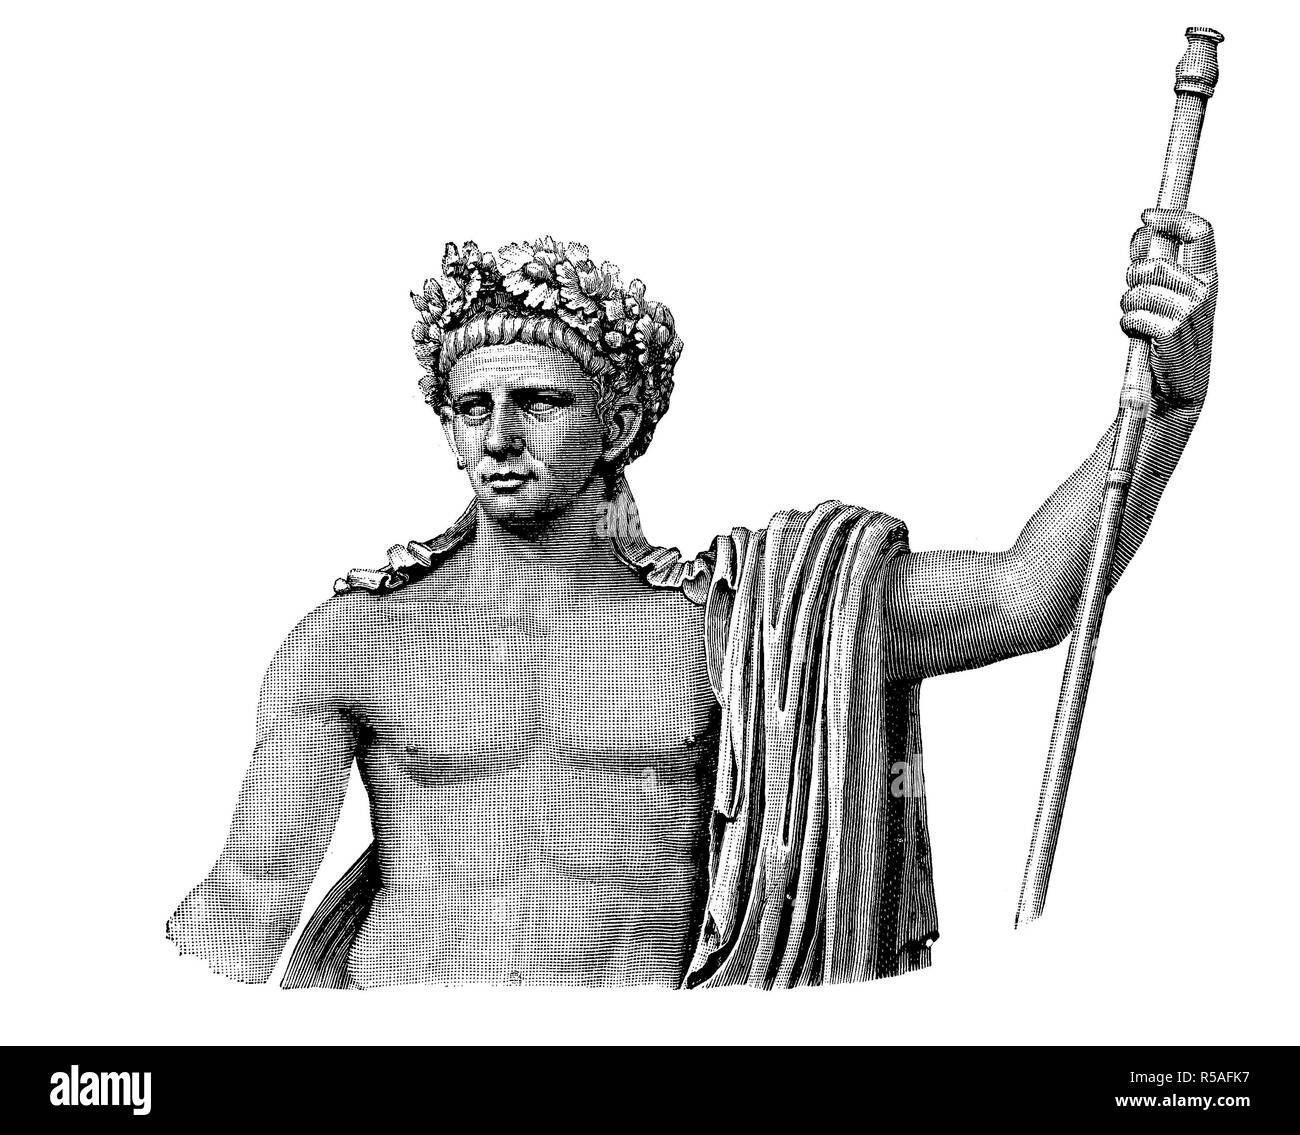 Der Siegeszug der Statue von Claudius in den Vatikanischen Museen in Rom, Tiberius Claudius Caesar Augustus Germanicus, 1. August 10 v. Chr. Stockfoto